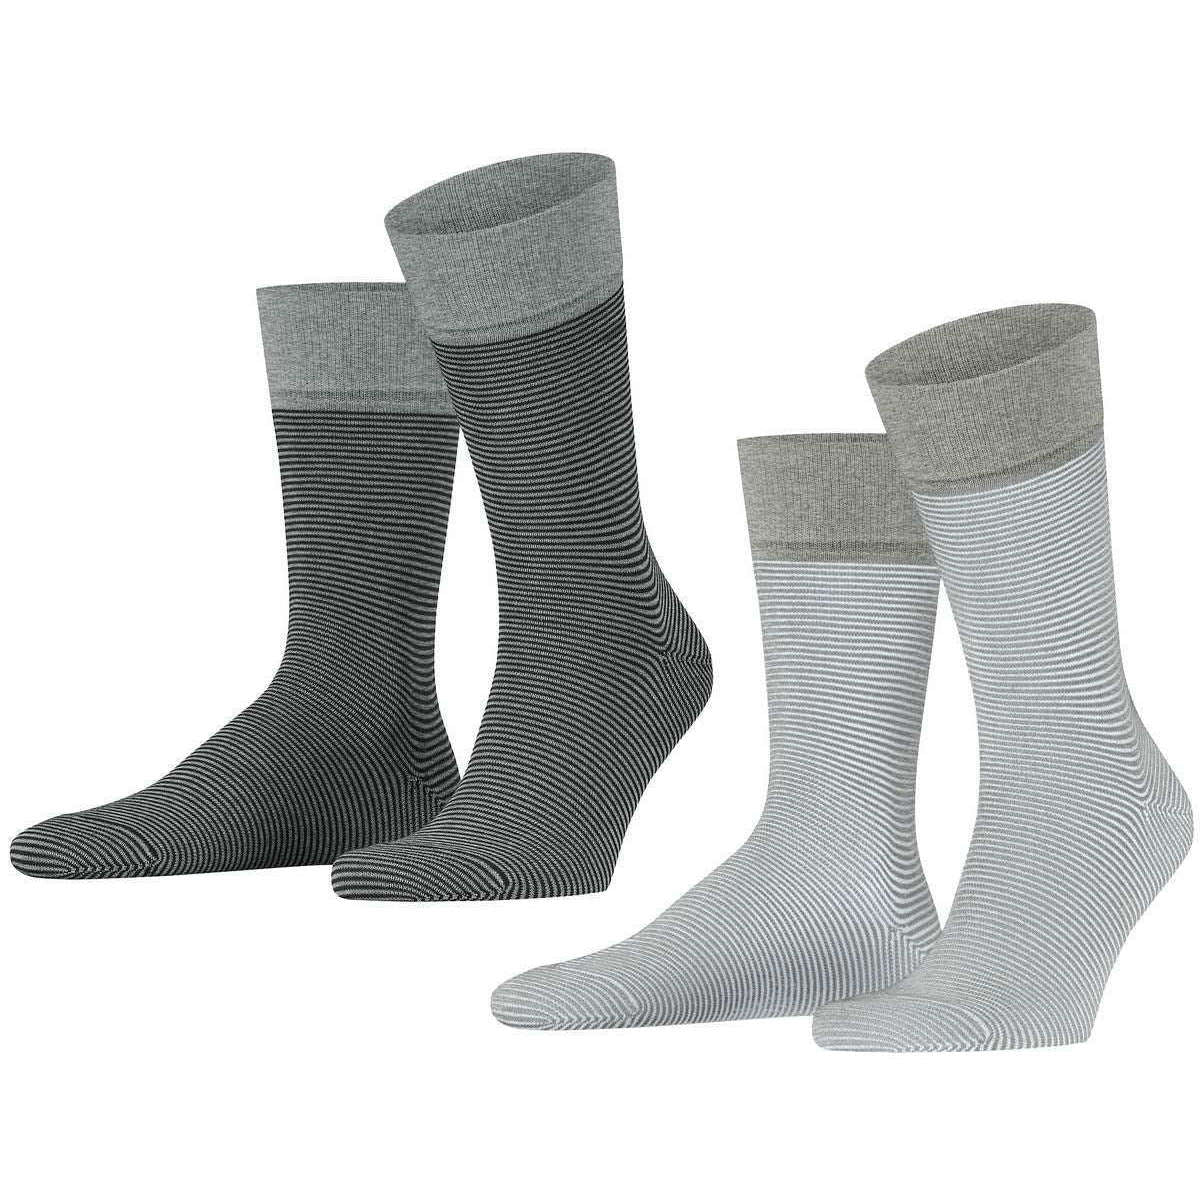 Esprit All Over Stripe 2 Pack Socks - Grey